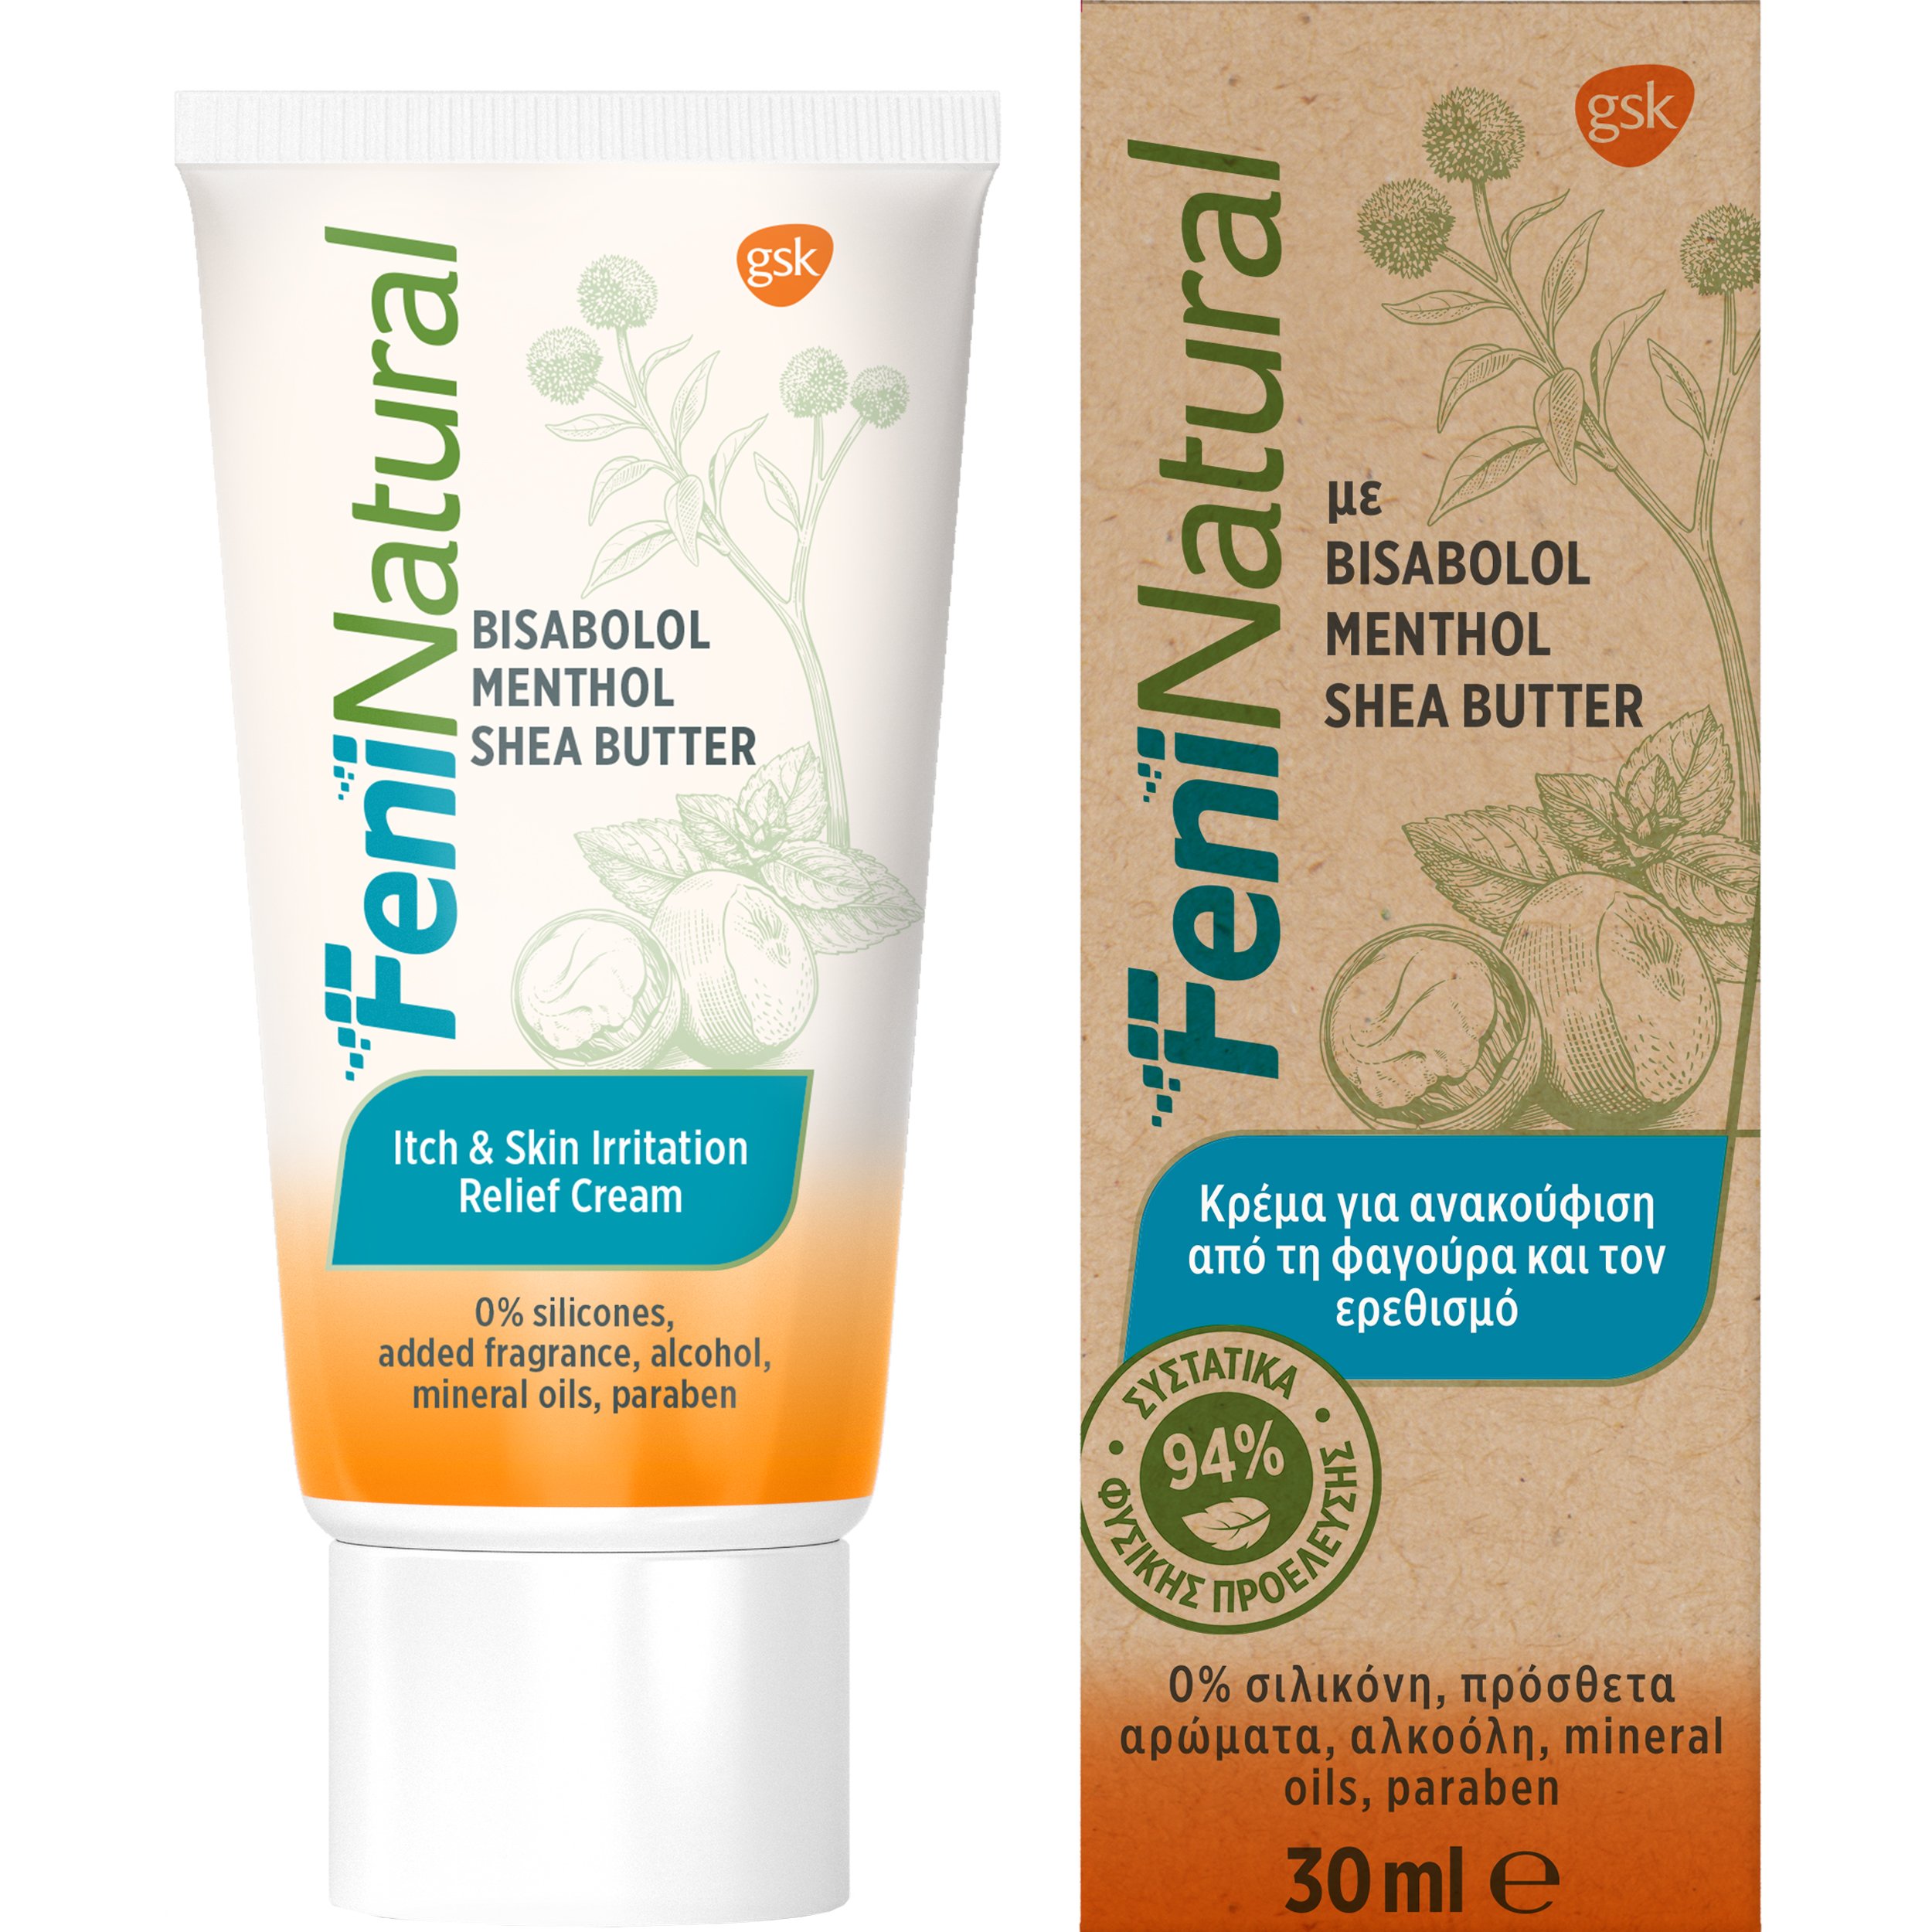 Glaxosmithkline FeniNatural Itch & Skin Irritation Relief Cream Κρέμα για Ανακούφιση από τη Φαγούρα & Ερεθισμό, με 94% Συστατικά Φυσικής Προέλευσης 30ml